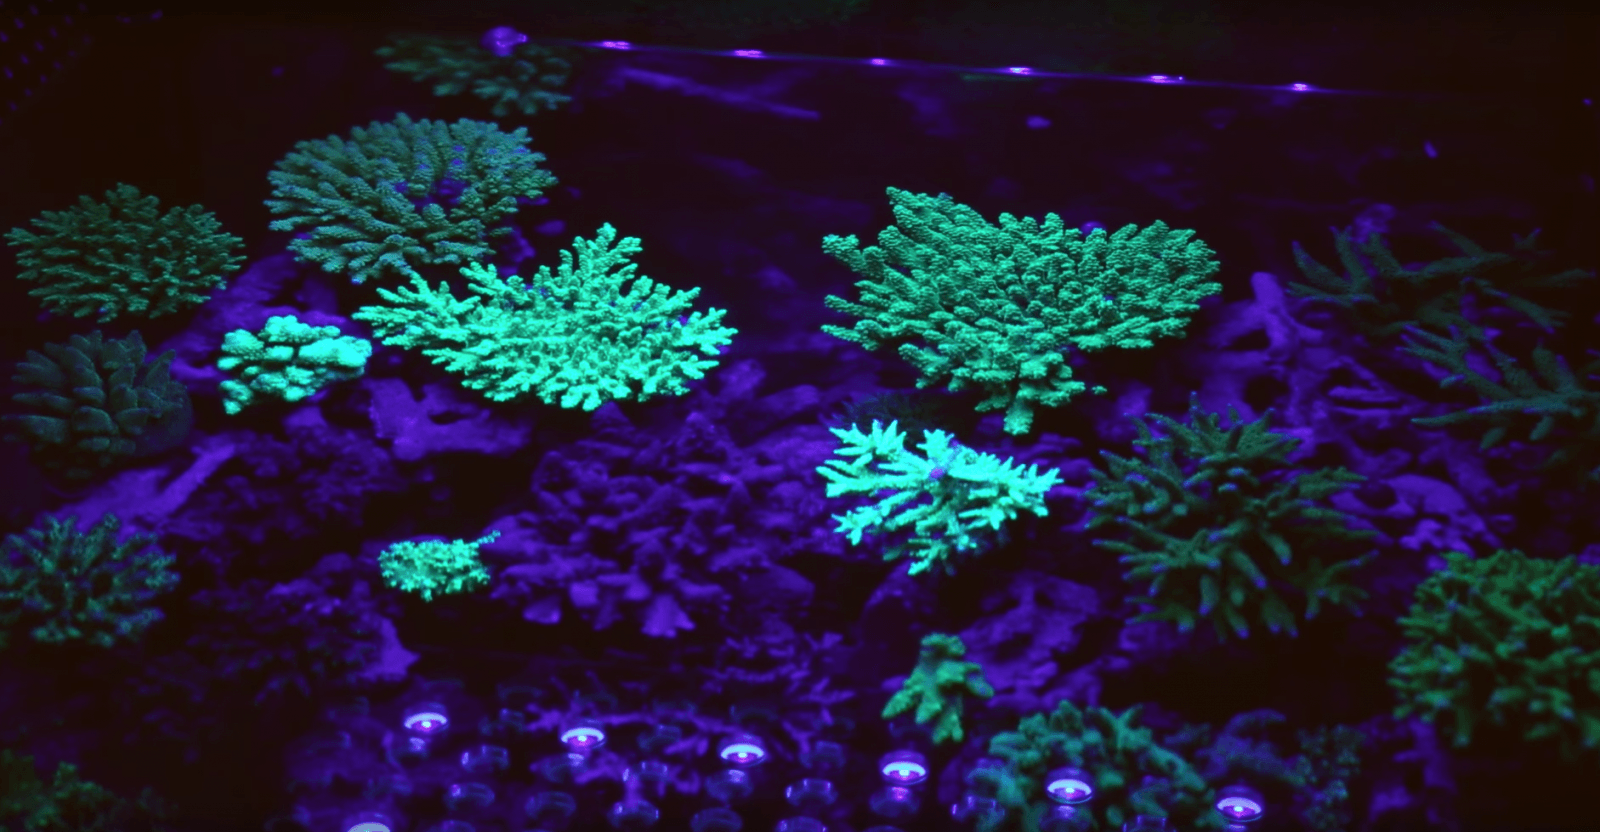 terumbu karang pencahayaan terbaik